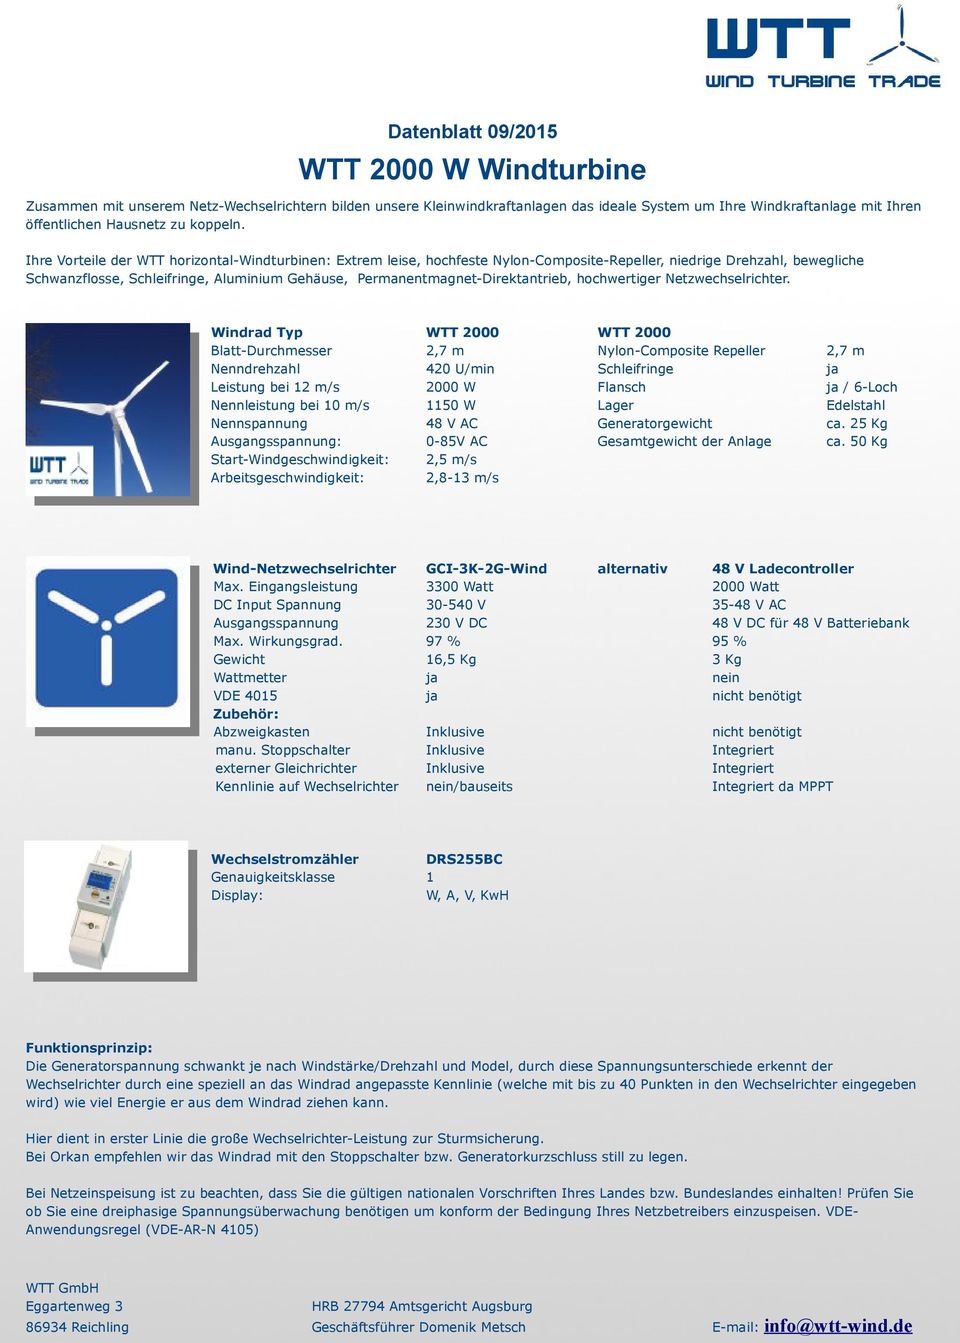 Edelstahl Nennspannung 48 V AC Generatorgewicht ca. 25 Kg Ausgangsspannung: -85V AC Gesamtgewicht der Anlage ca. 5 Kg Wind-Netzwechselrichter GCI-3K-2G-Wind alternativ 48 V Ladecontroller Max.